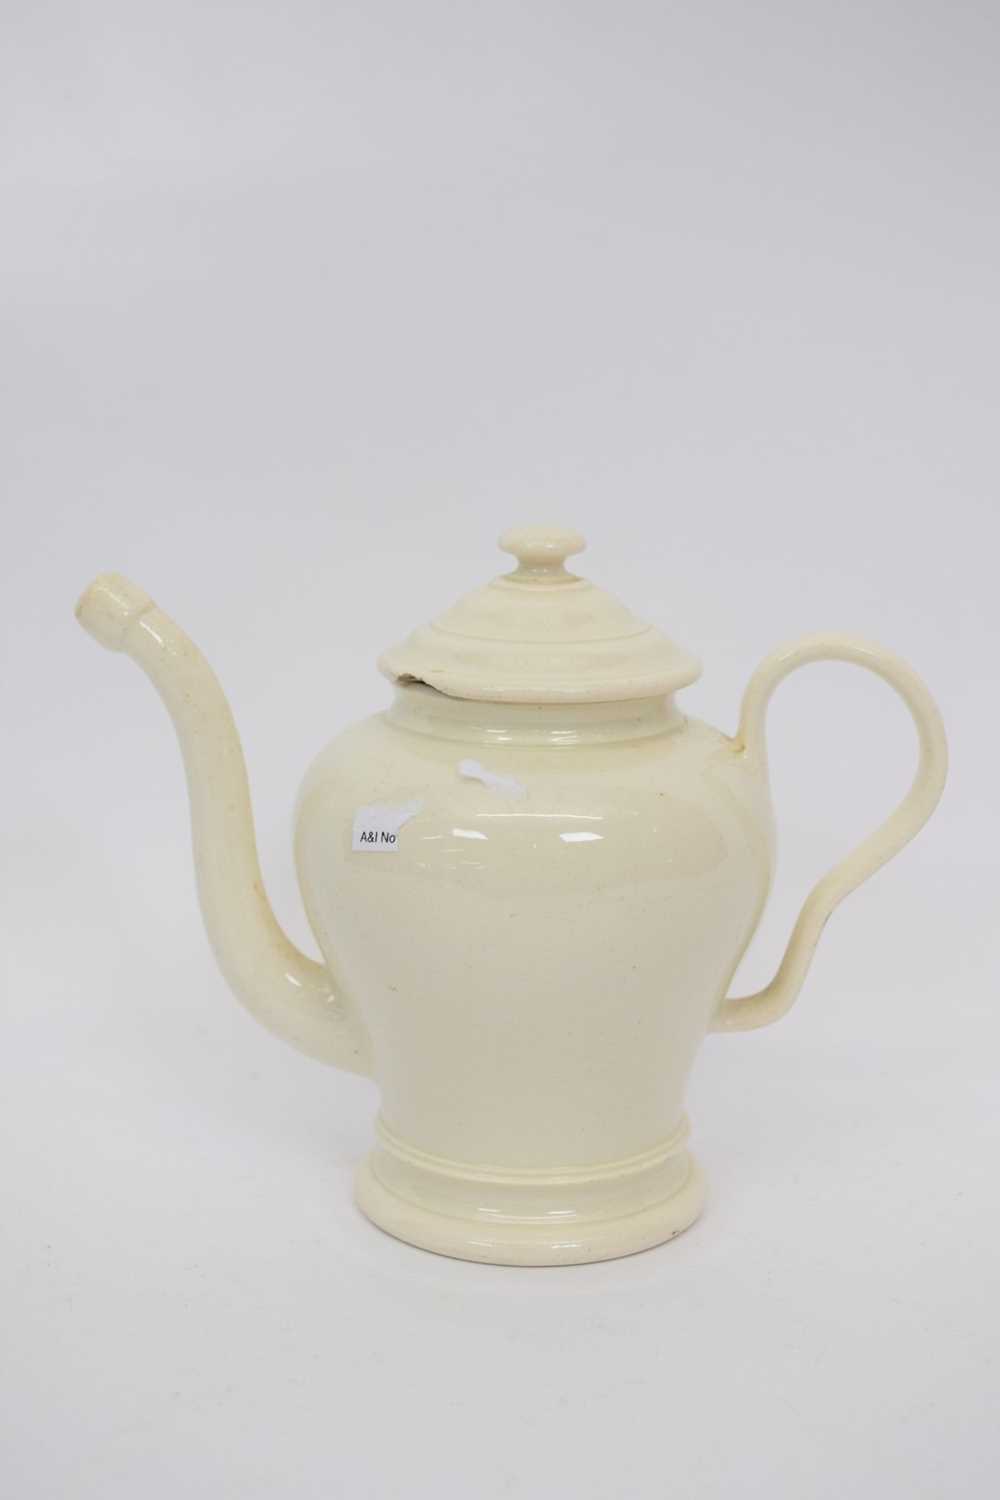 Lot 114 - Small cream ware tea pot with unusual spout,...